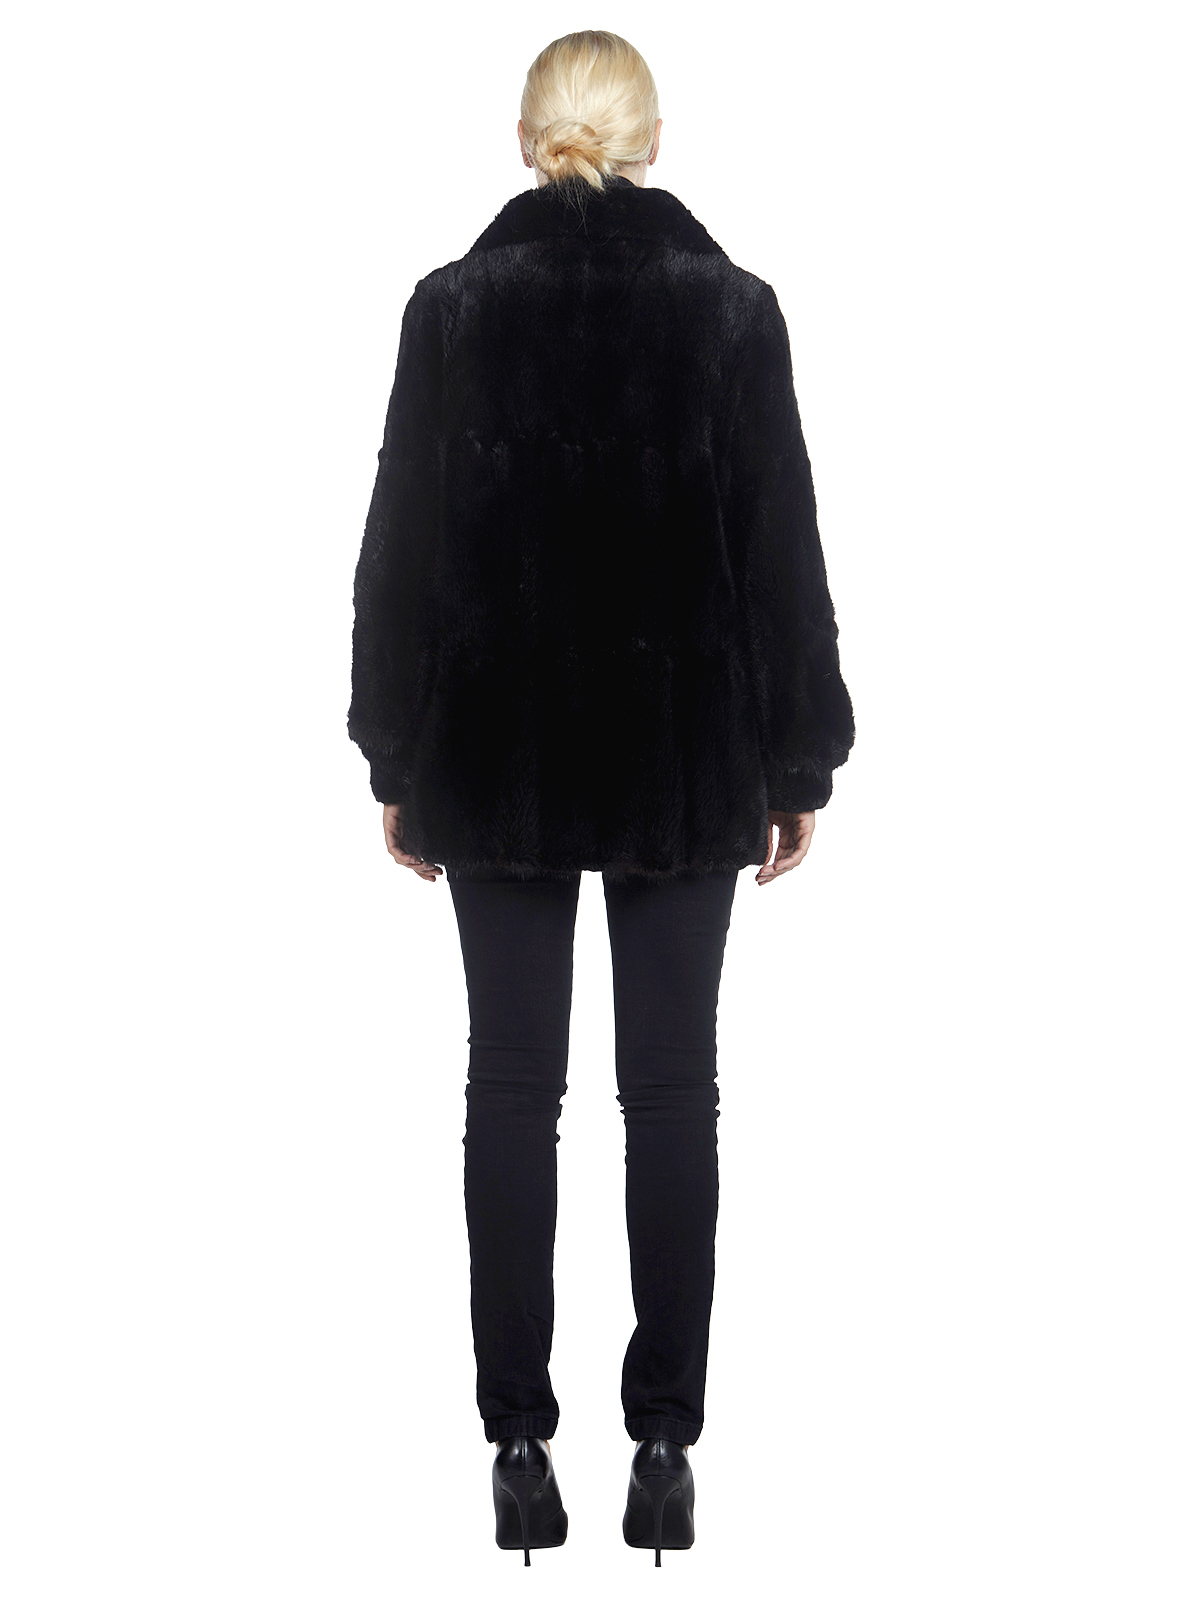 Black Dyed Long Haired Muskrat Fur Jacket - Women's Fur Jacket - Medium ...